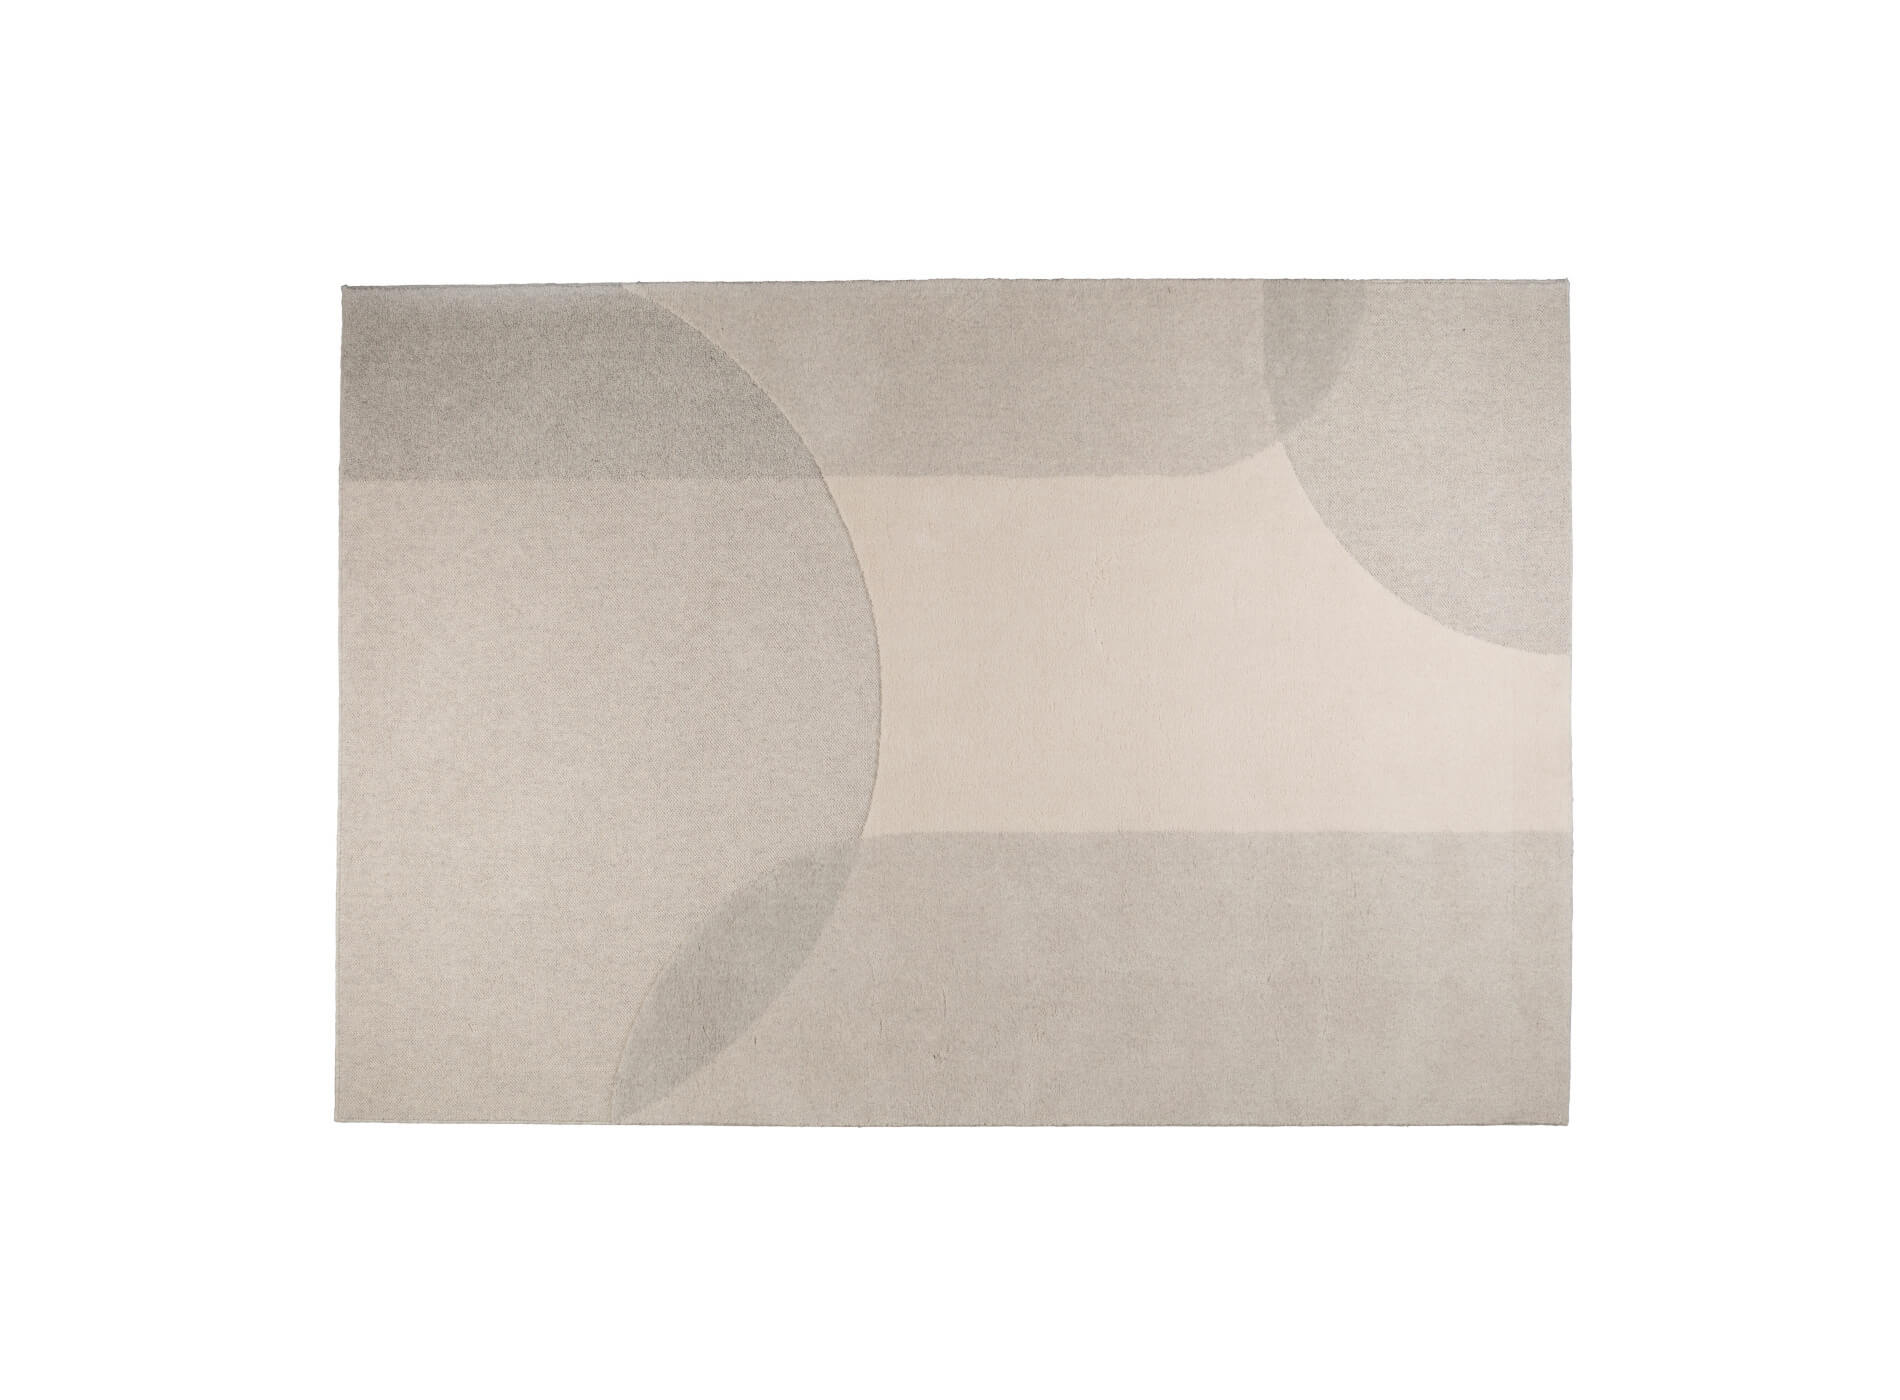 Dream Teppich, 200 x 300 cm, natur / pink